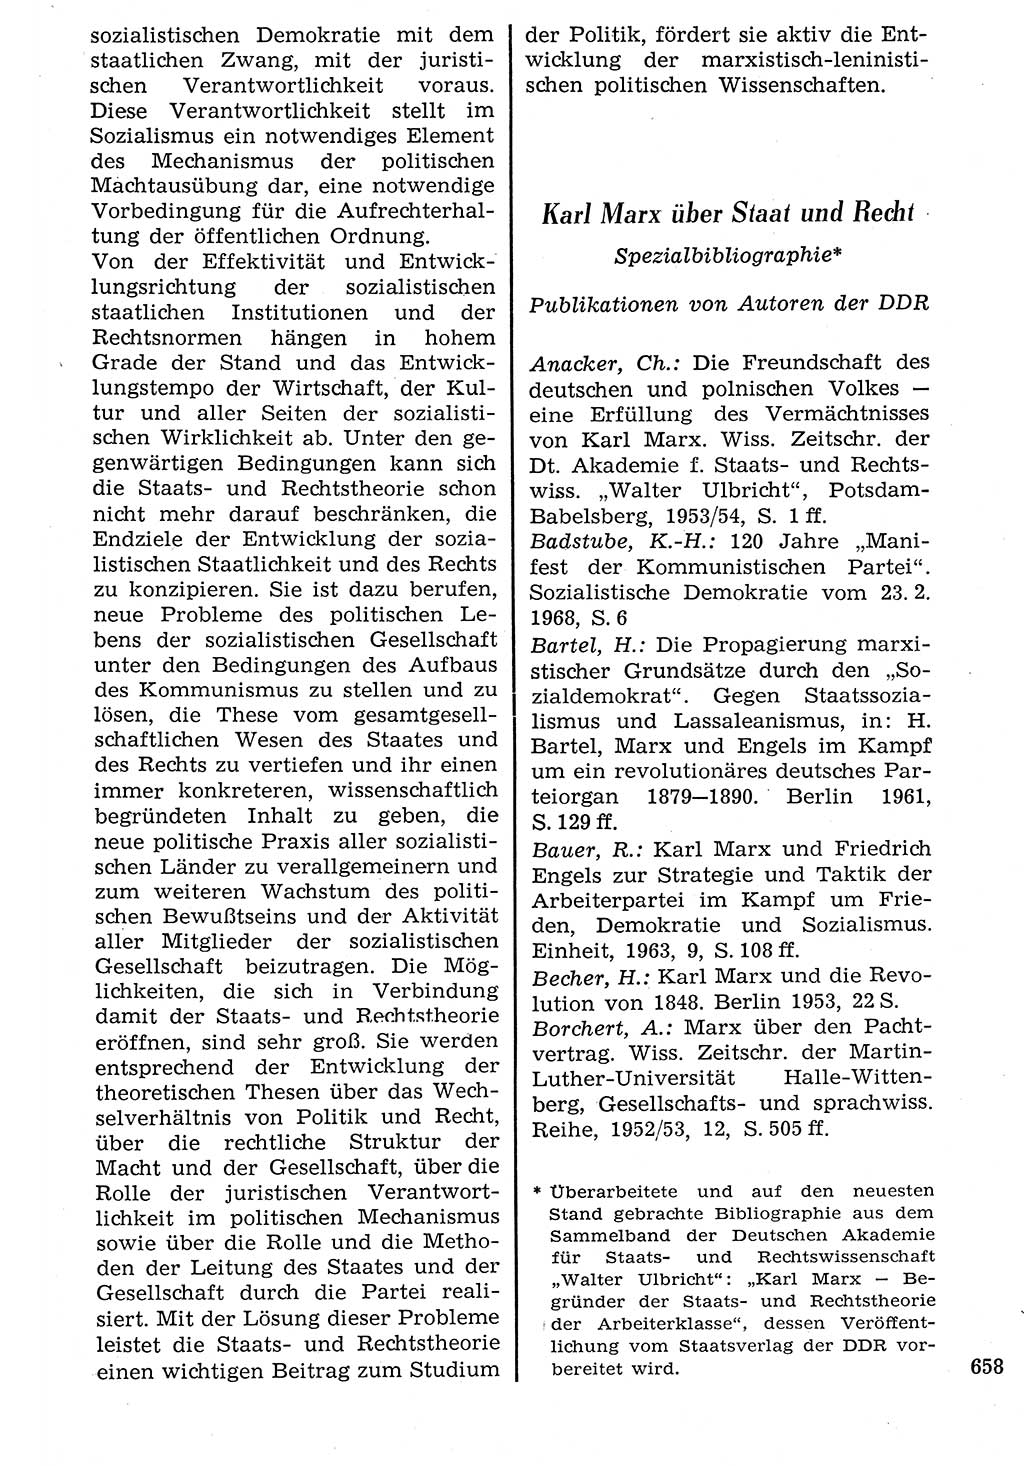 Staat und Recht (StuR), 17. Jahrgang [Deutsche Demokratische Republik (DDR)] 1968, Seite 658 (StuR DDR 1968, S. 658)